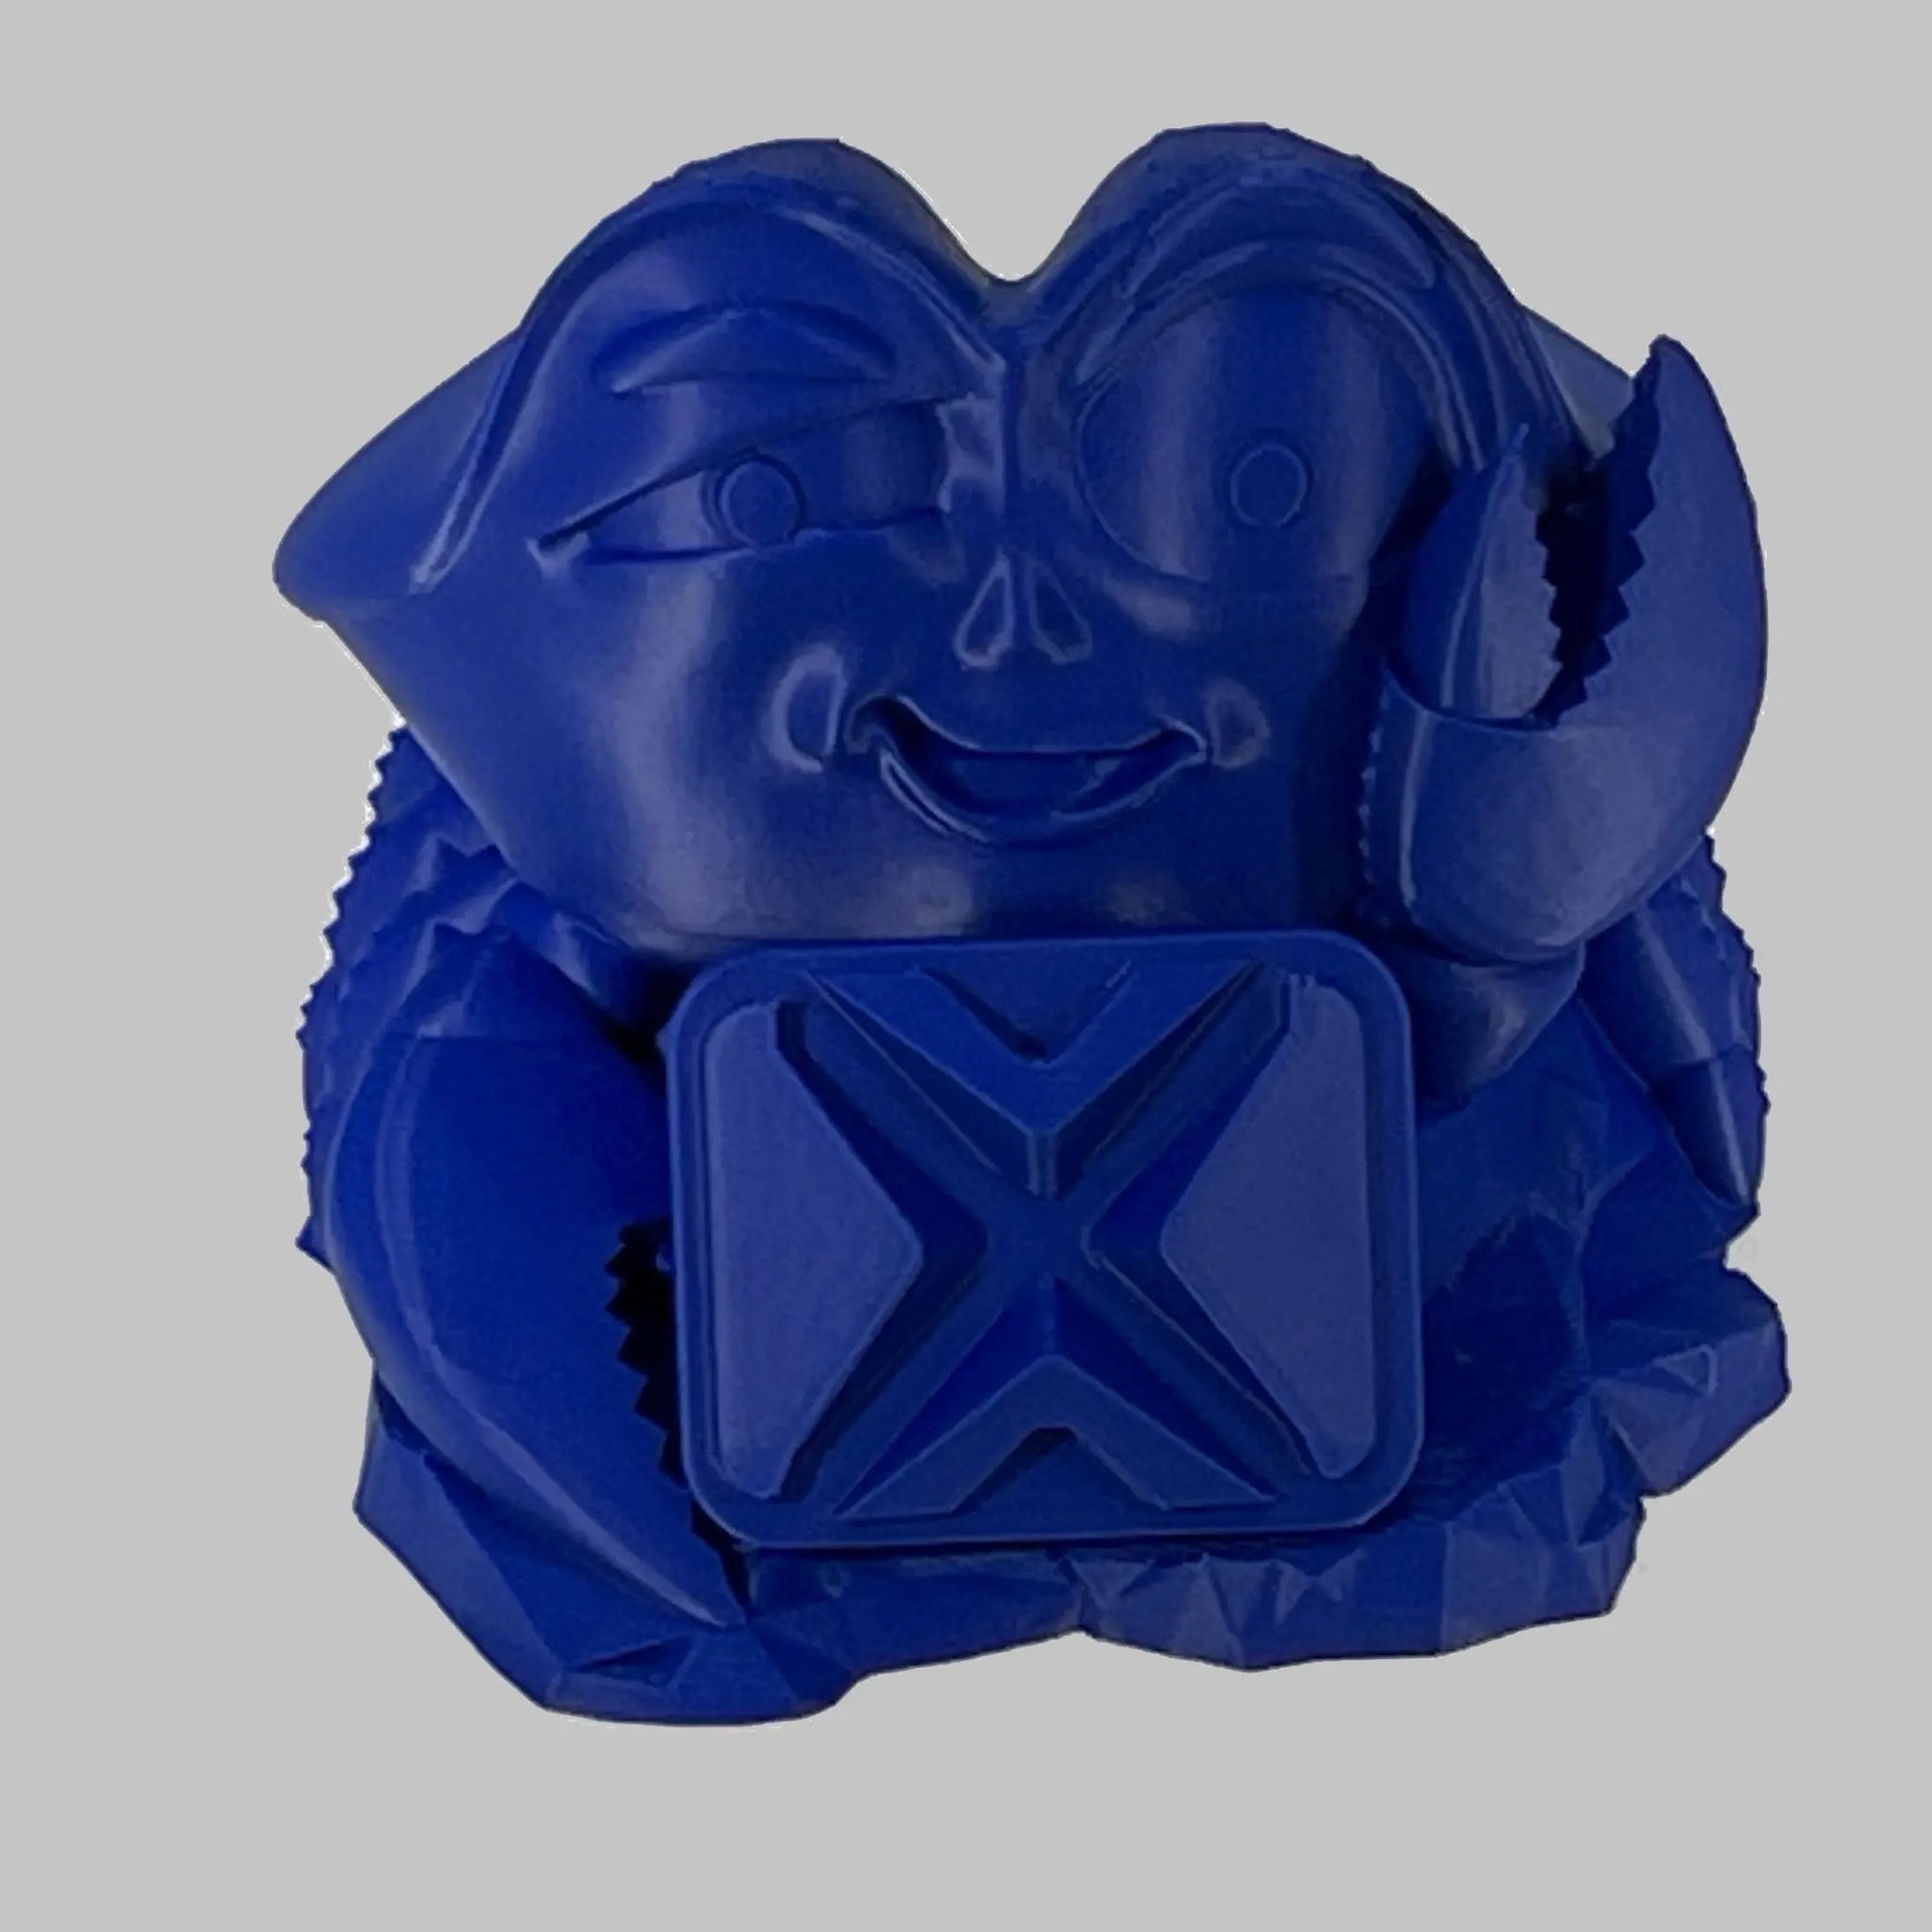 Cobalt Blue ASA Prime COEX 3D